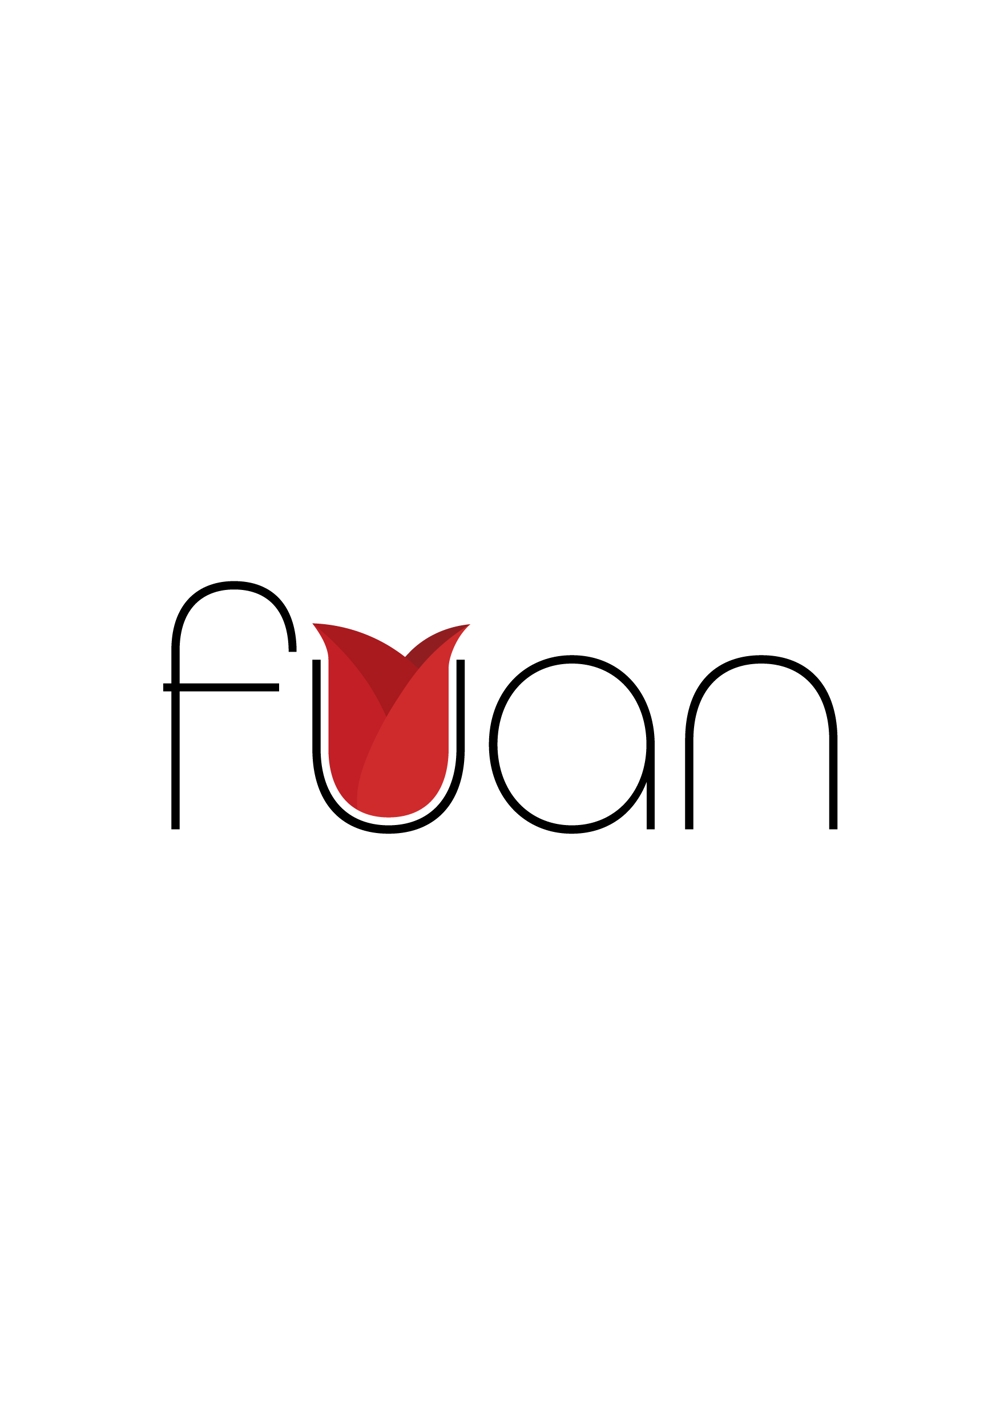 美容整体サロン「fuan」のロゴ